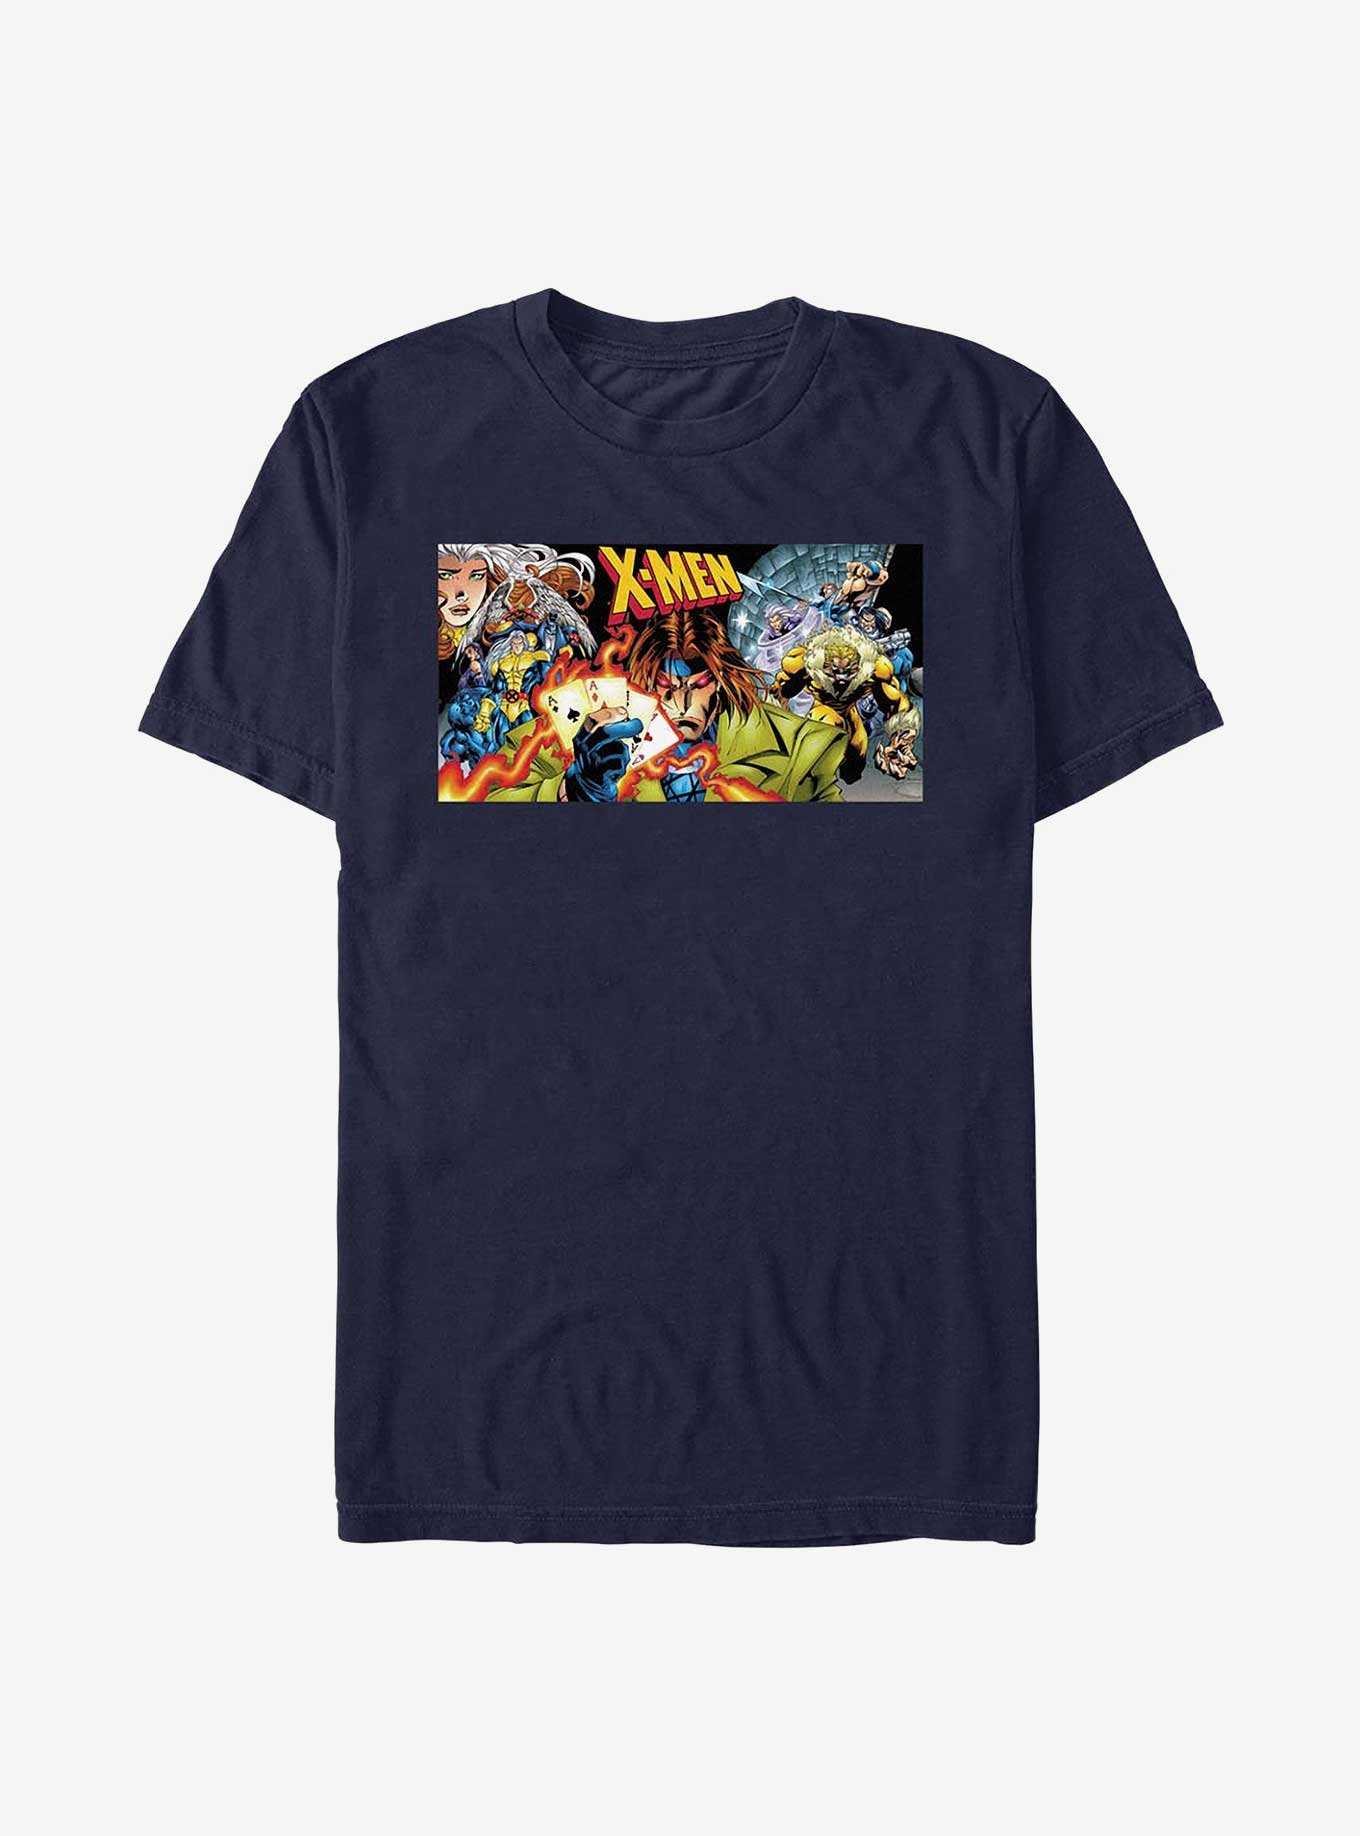 X-Men Uncanny Gambit Cover T-Shirt, , hi-res